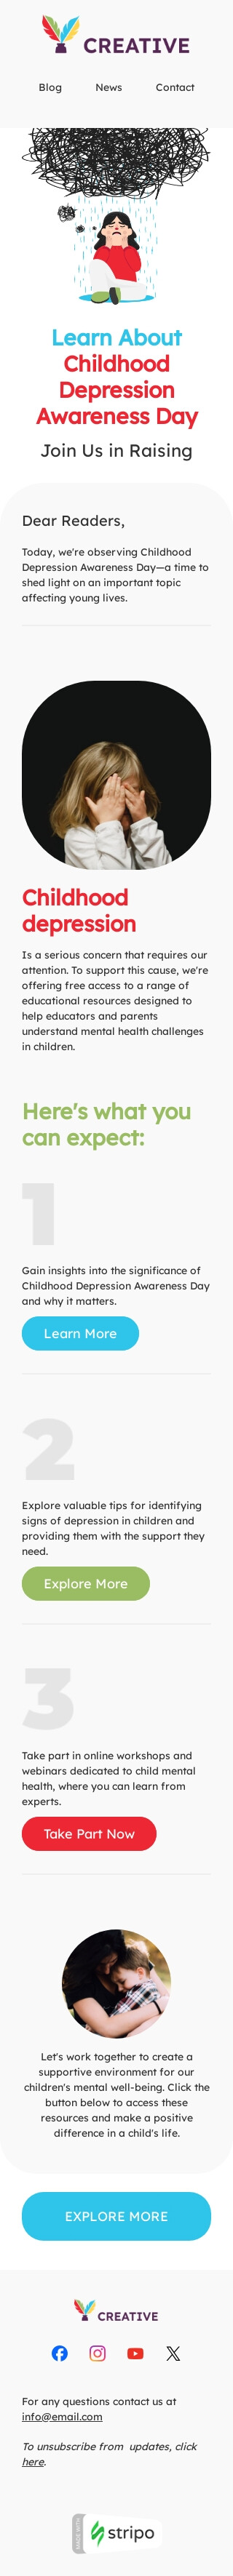 Шаблон листа до свята День обізнаності про дитячу депресію «Дитяча депресія» для індустрії «Публікації та блог» мобільний вигляд